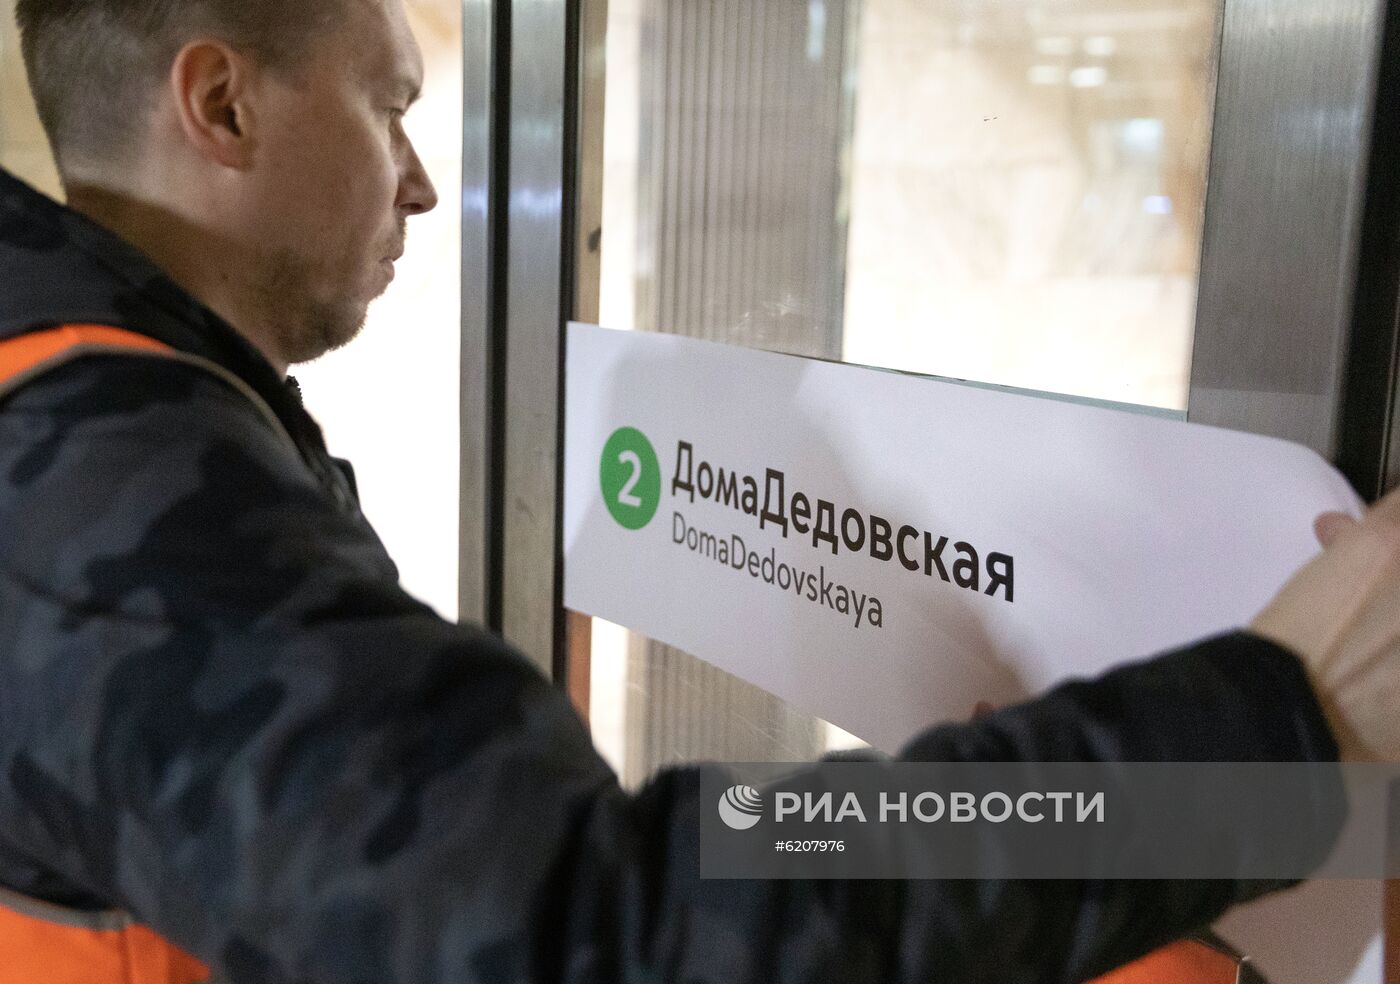 Московское метро "переименовало" две станции из-за коронавируса